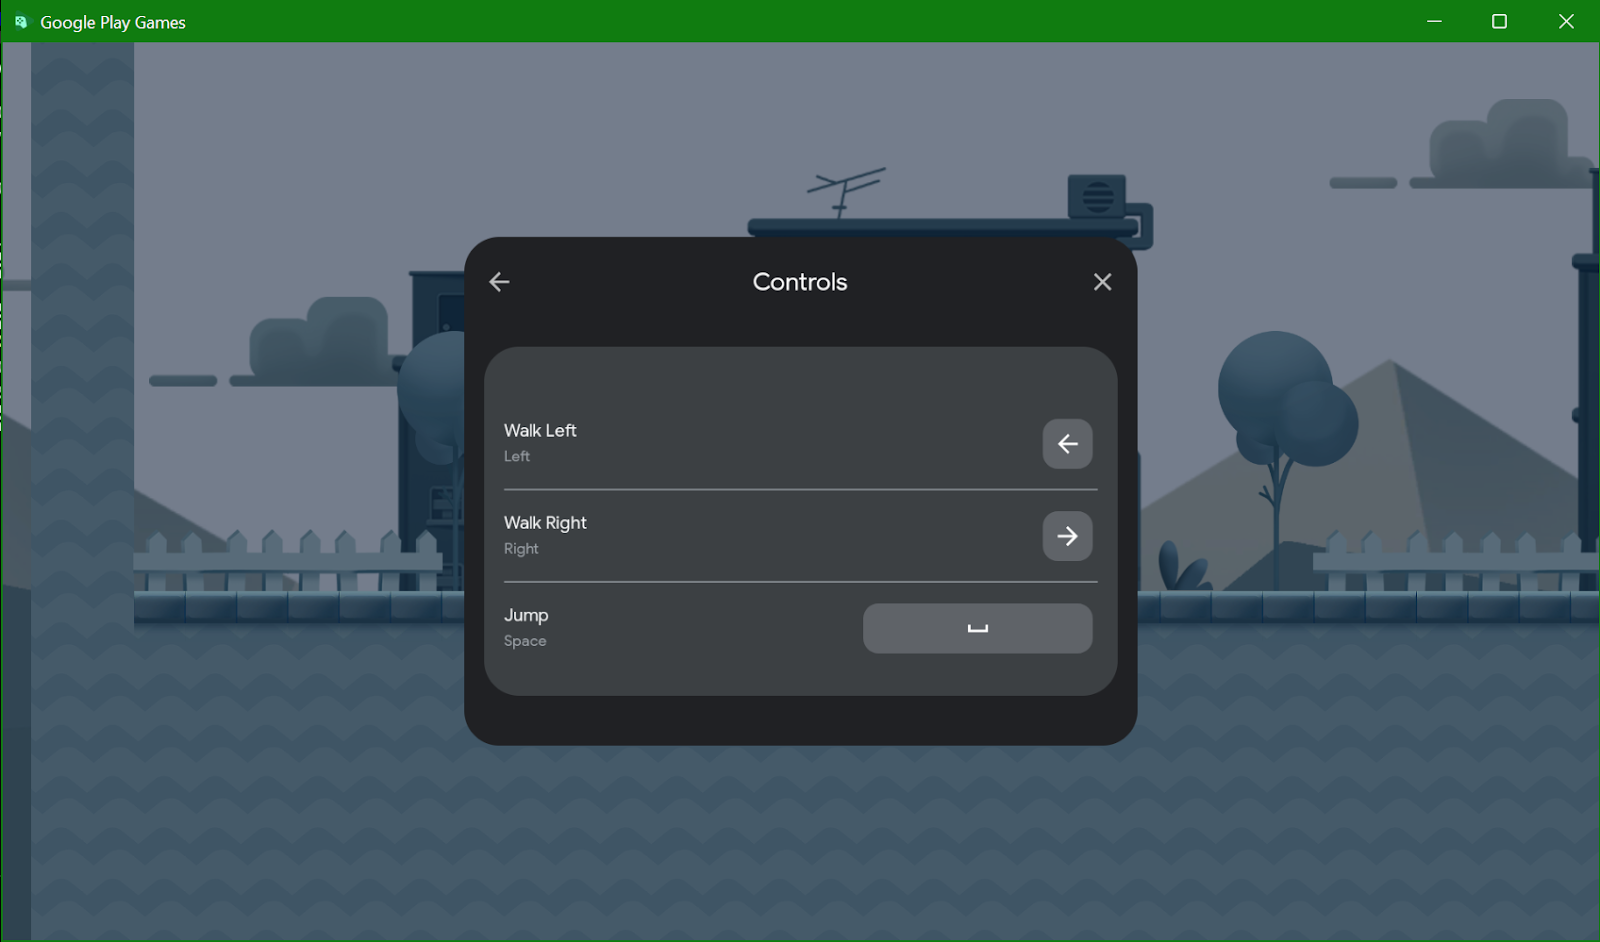 Captura de tela da sobreposição "Controles" no emulador do Google Play Games